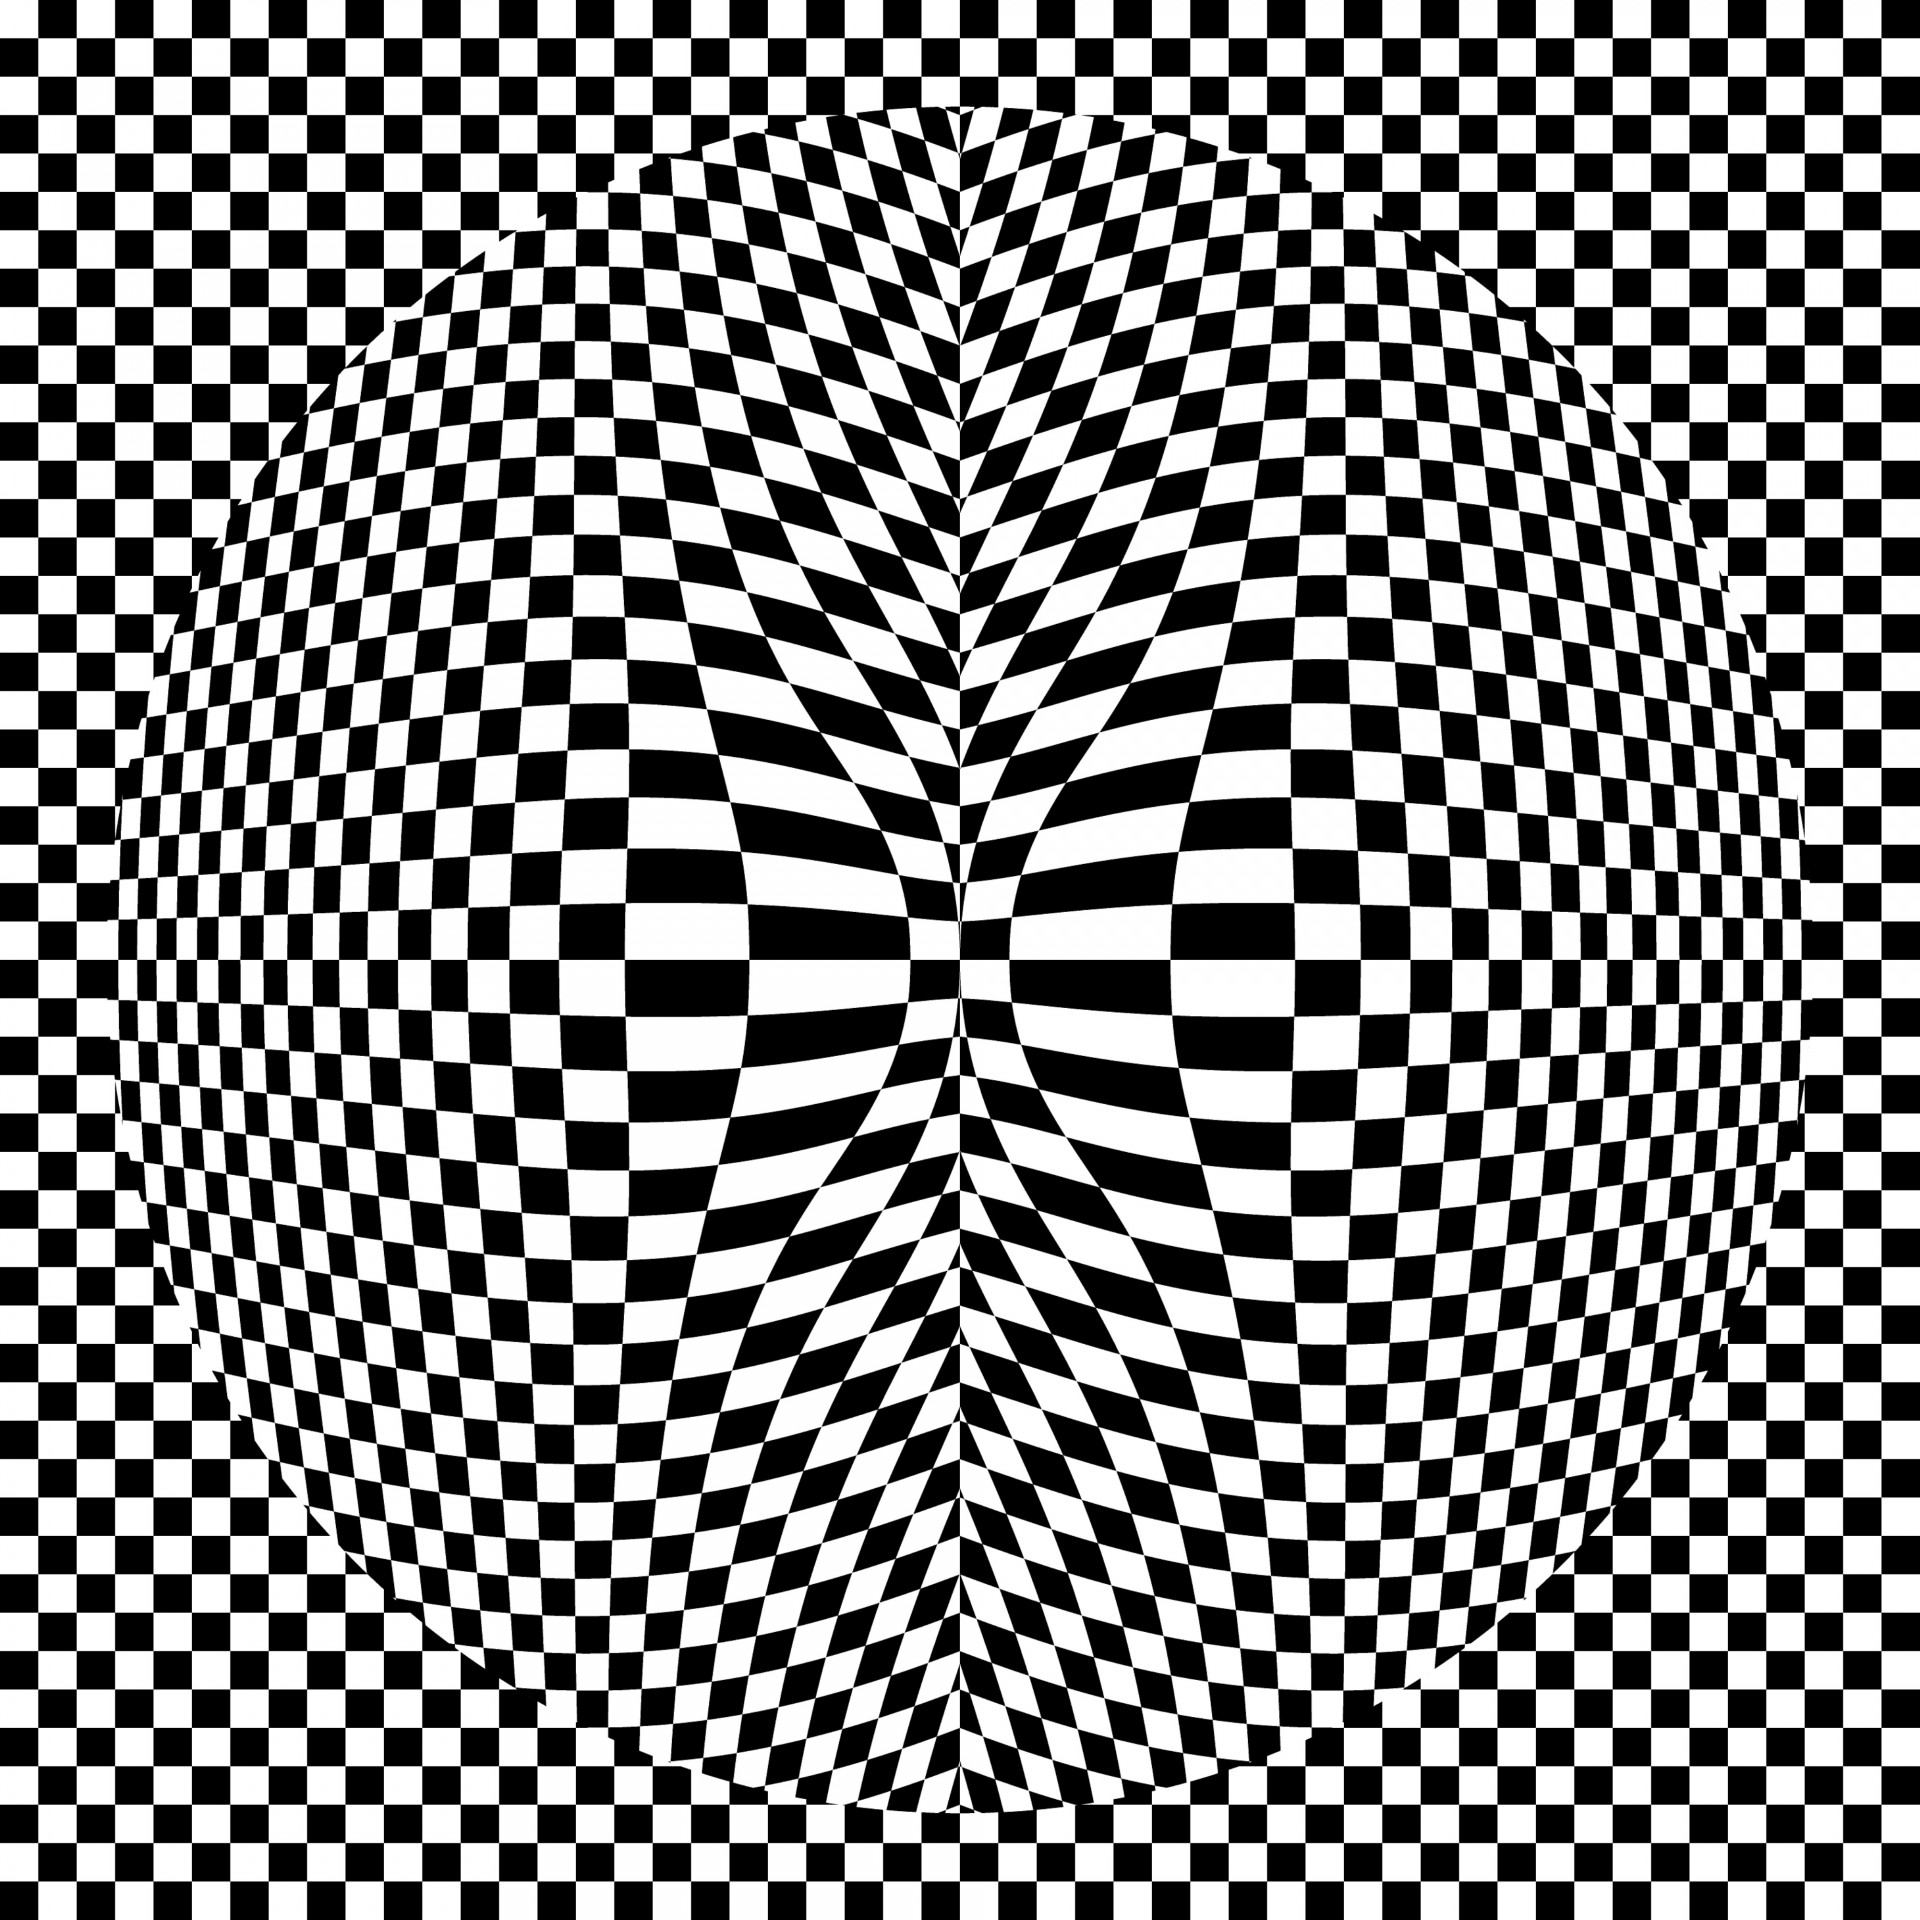 Board Checker Illusion